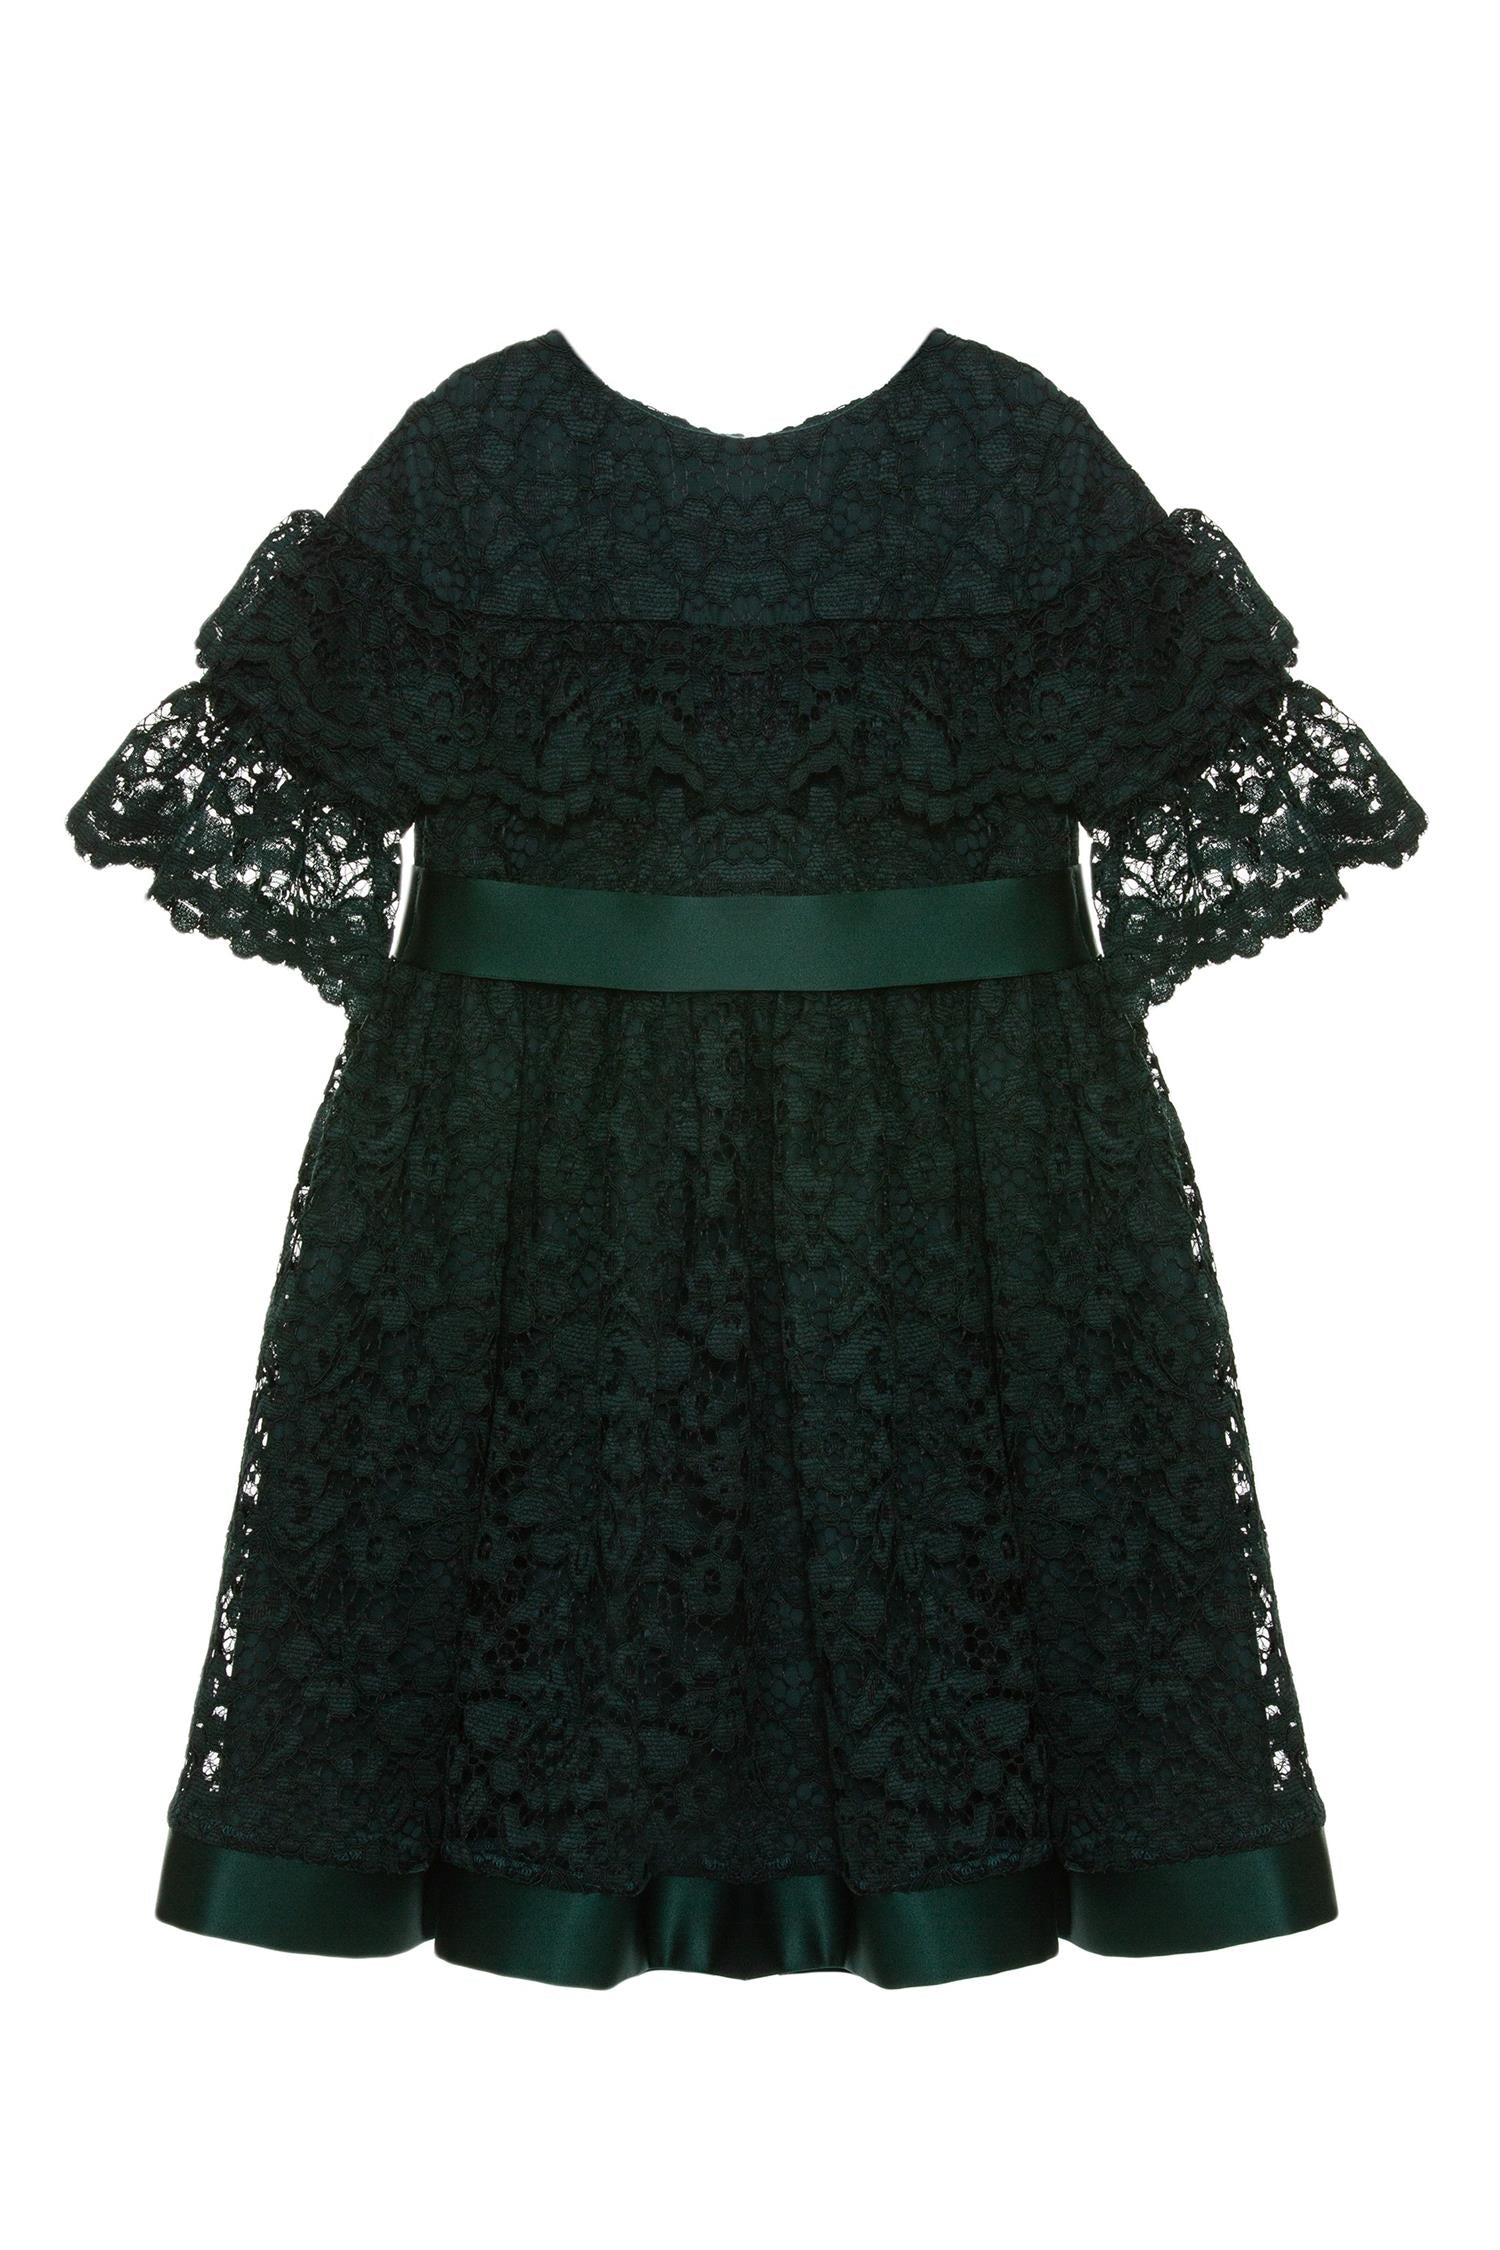 Woven Dress Emerald 8-10 år